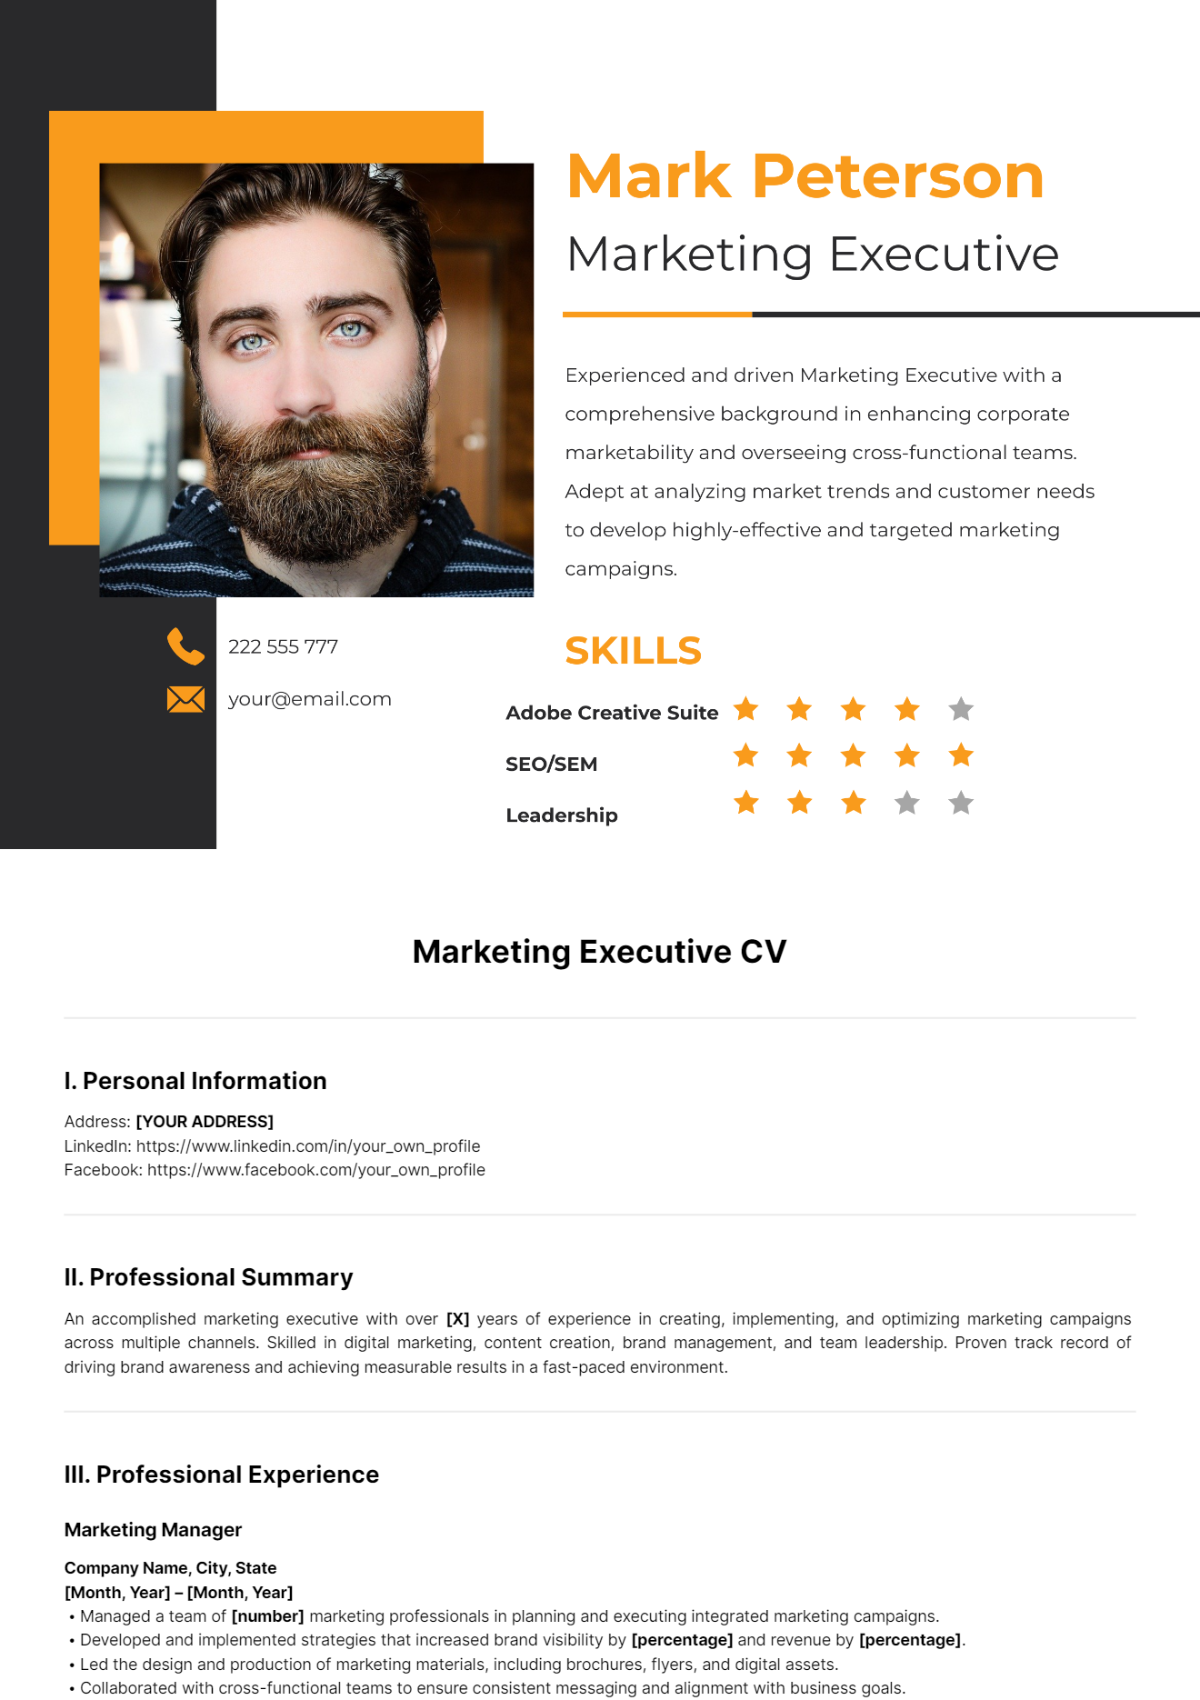 Marketing Executive CV Template